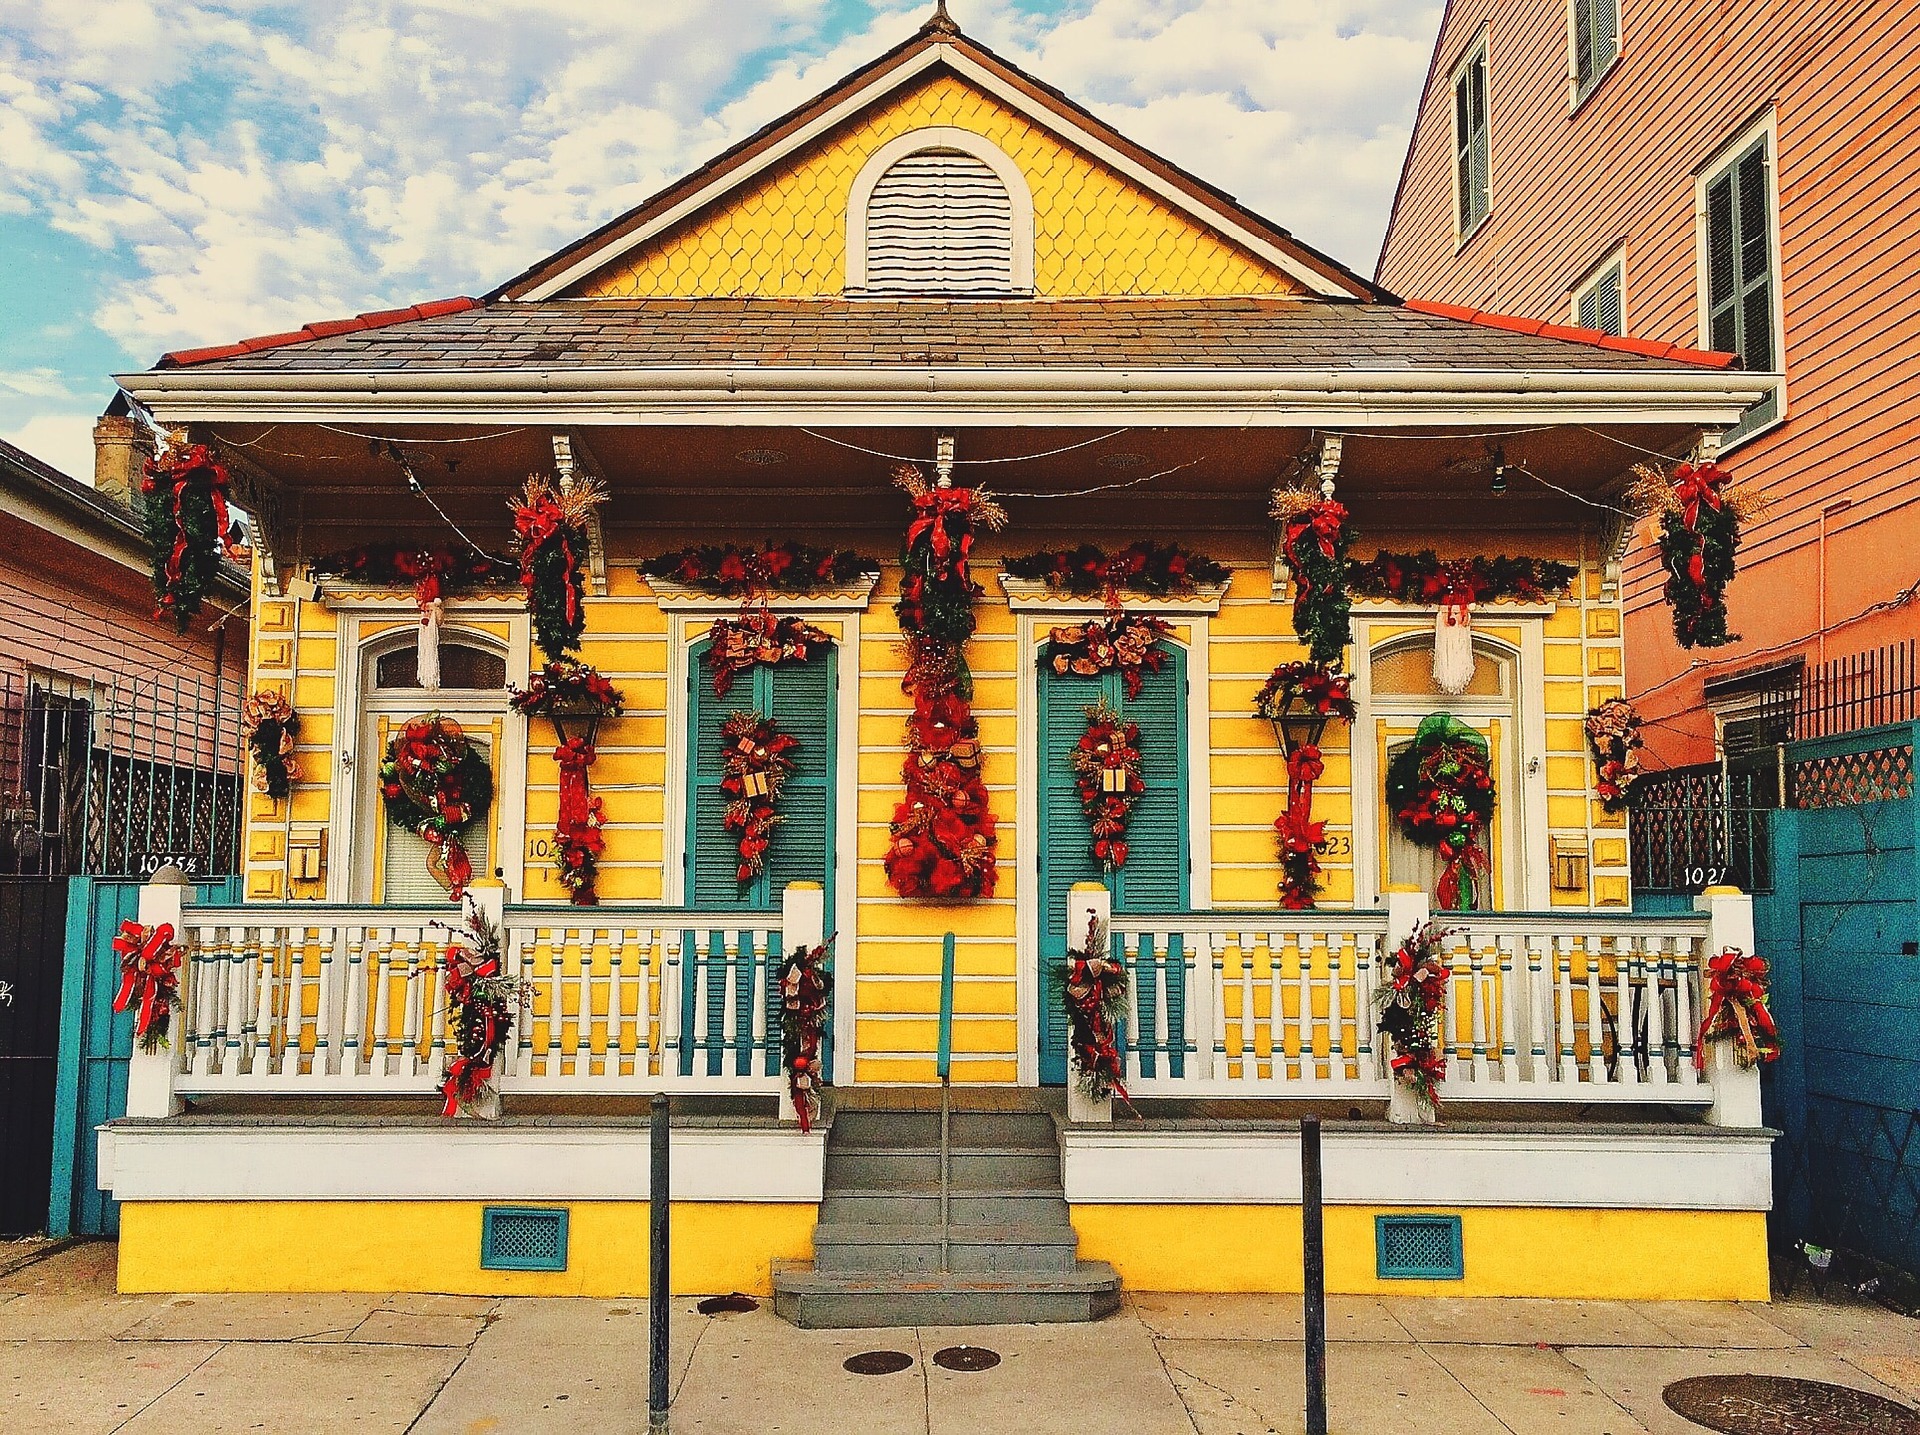 Los vivos colores y la estética de las casas de Nueva Orleans nos dejaron maravillados. Nos hemos copiado de su decoración alguna Navidad... ¡Pero no se lo digáis a nadie!